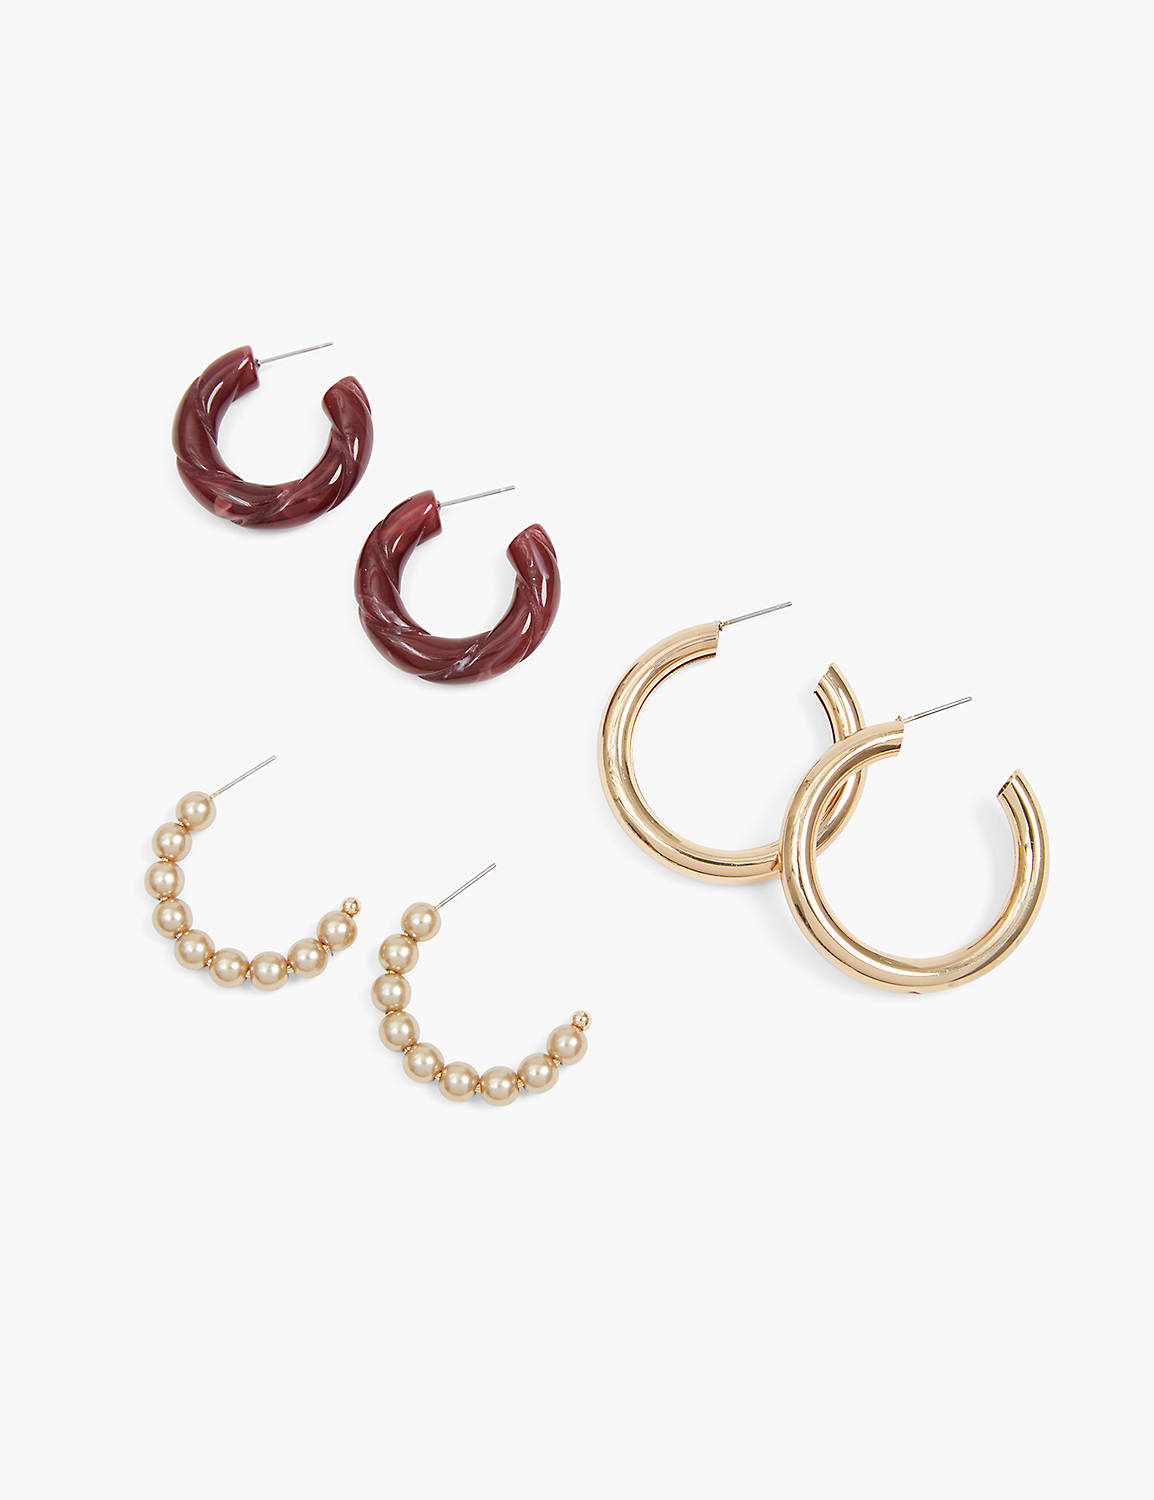 Resin & Metal Hoop Earrings 3 Pack Product Image 1